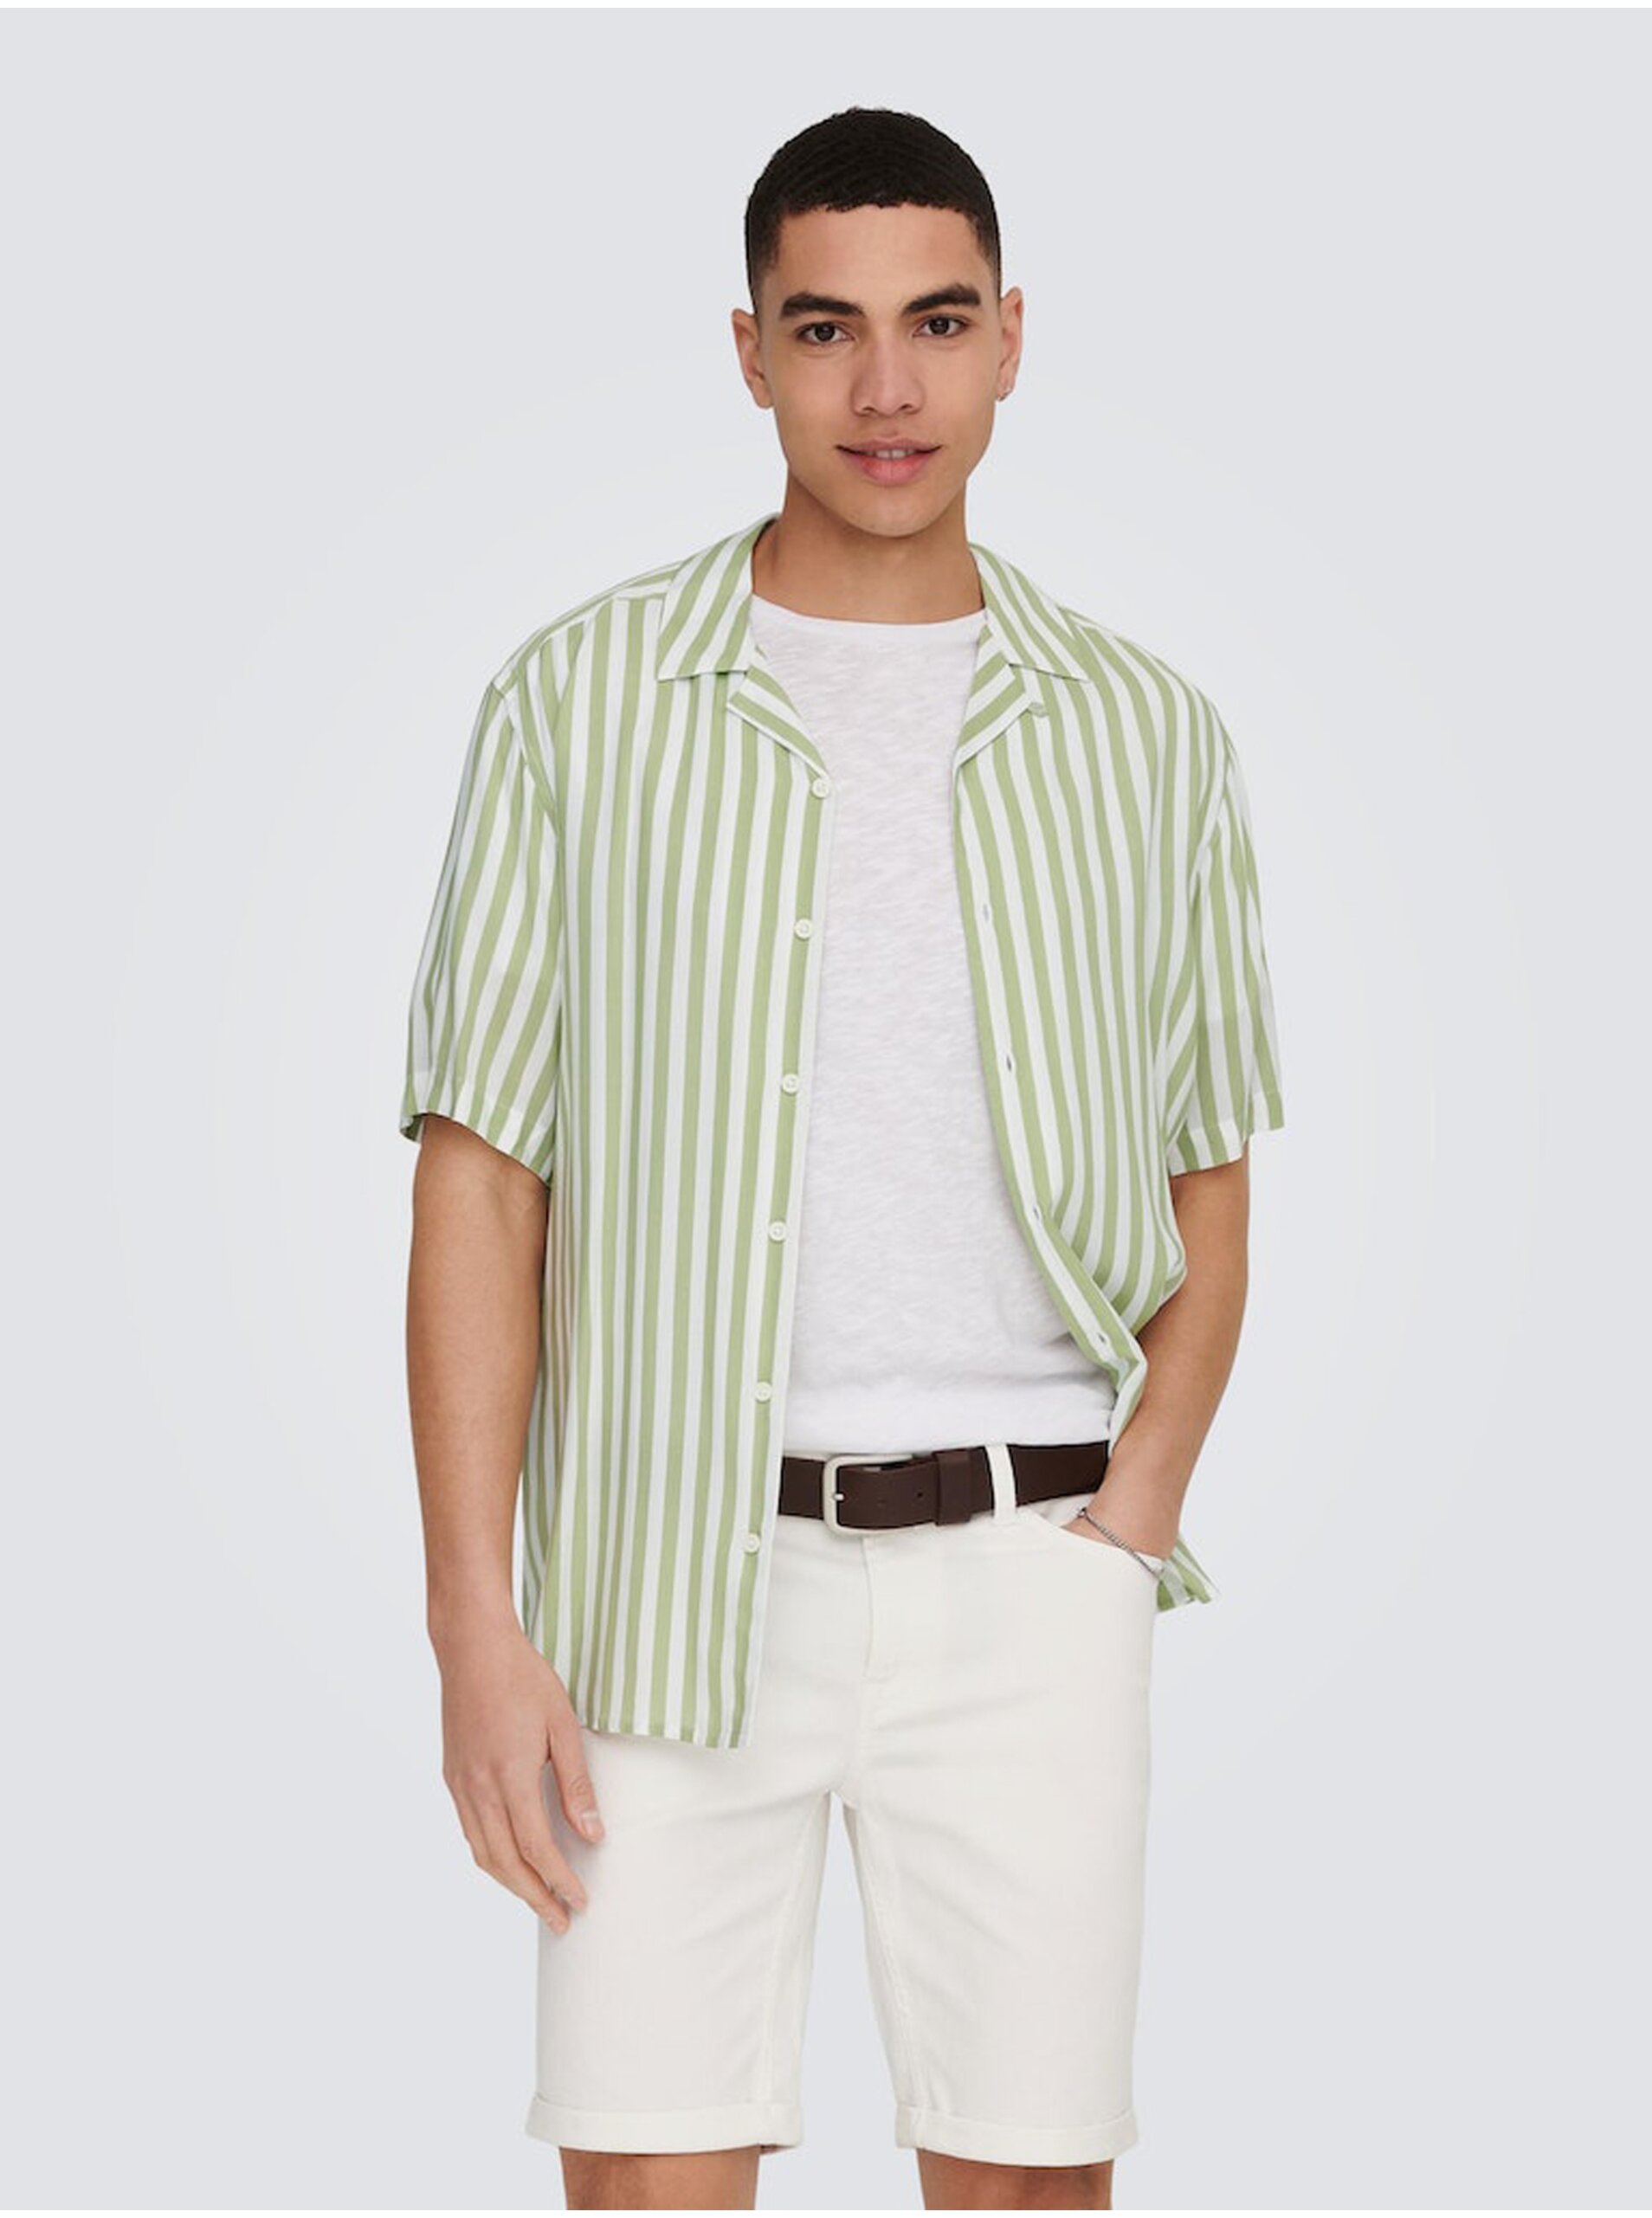 E-shop Bielo-zelená pánska pruhovaná košeľa s krátkym rukávom ONLY & SONS Wayne